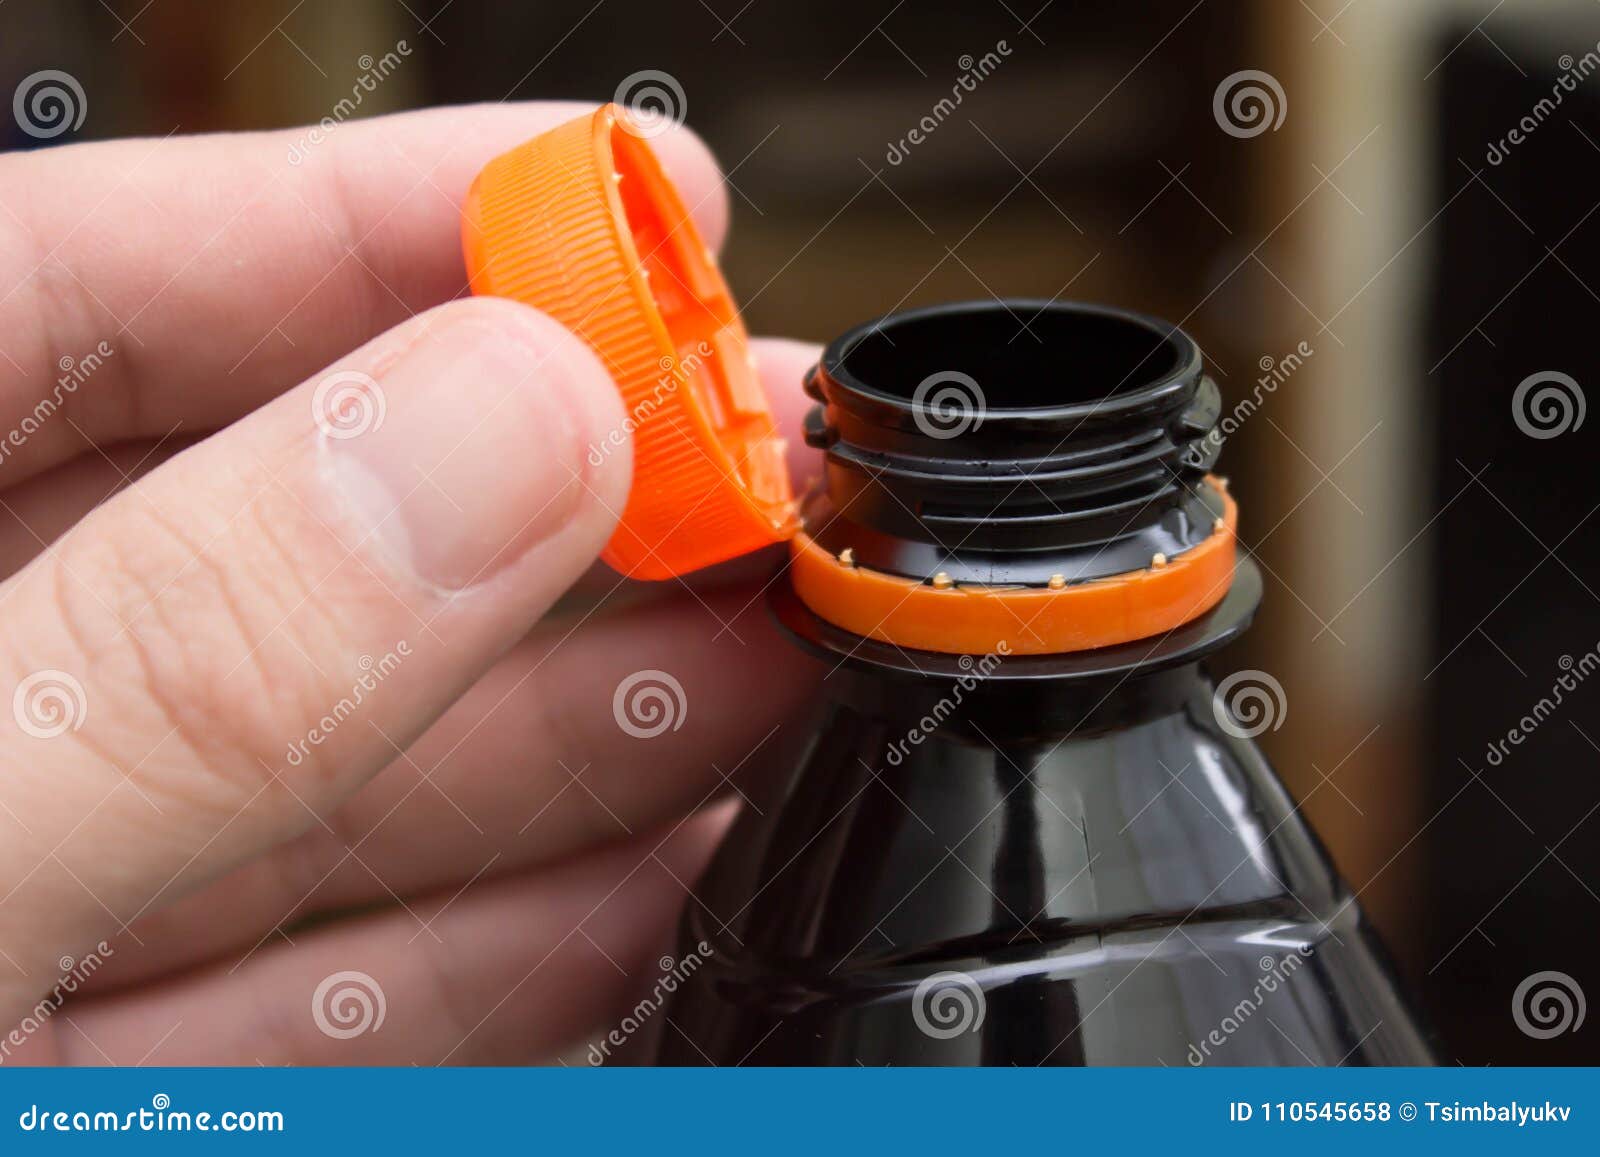 В бутылке закрытой крышкой находится вода. Откручивание крышки с бутылки. Крышки для пластиковых бутылок открываемые. Бутылка с открывающейся крышкой. Пластмассовая бутылка с открывающейся колпачком.